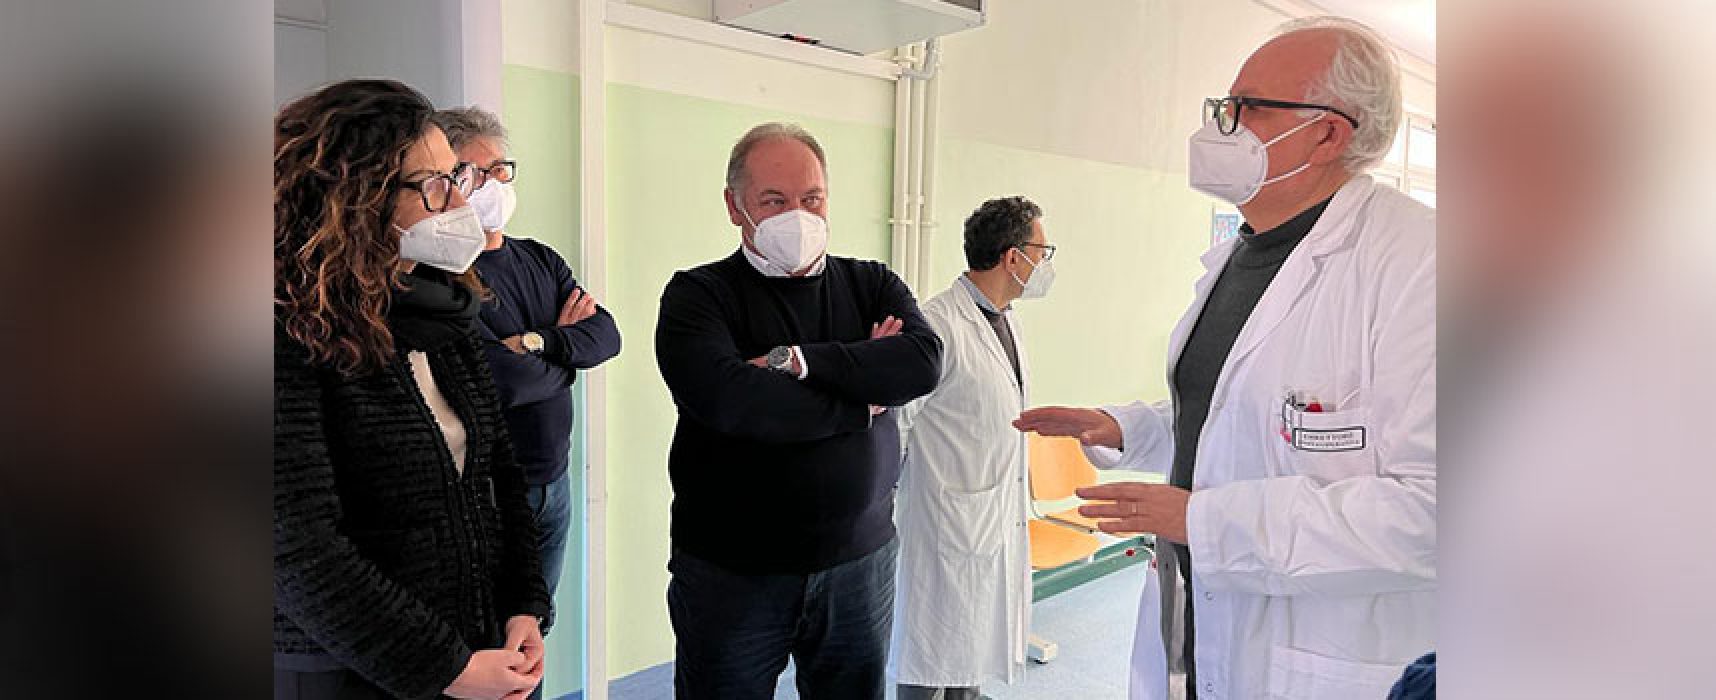 Sopralluogo Asl Bt ad ospedale Bisceglie, Sinigaglia: “Riorganizzazione dipende da andamento Covid”